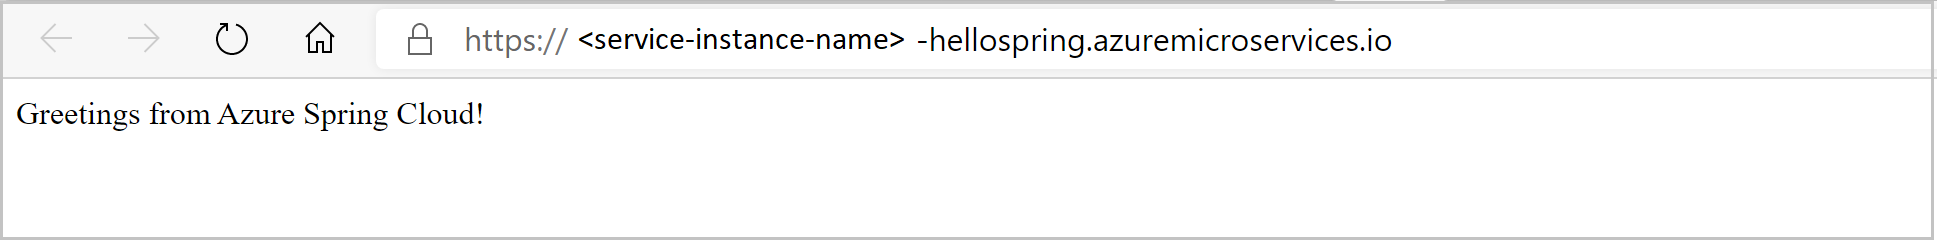 Screenshot dell'app hello spring come illustrato nel browser.